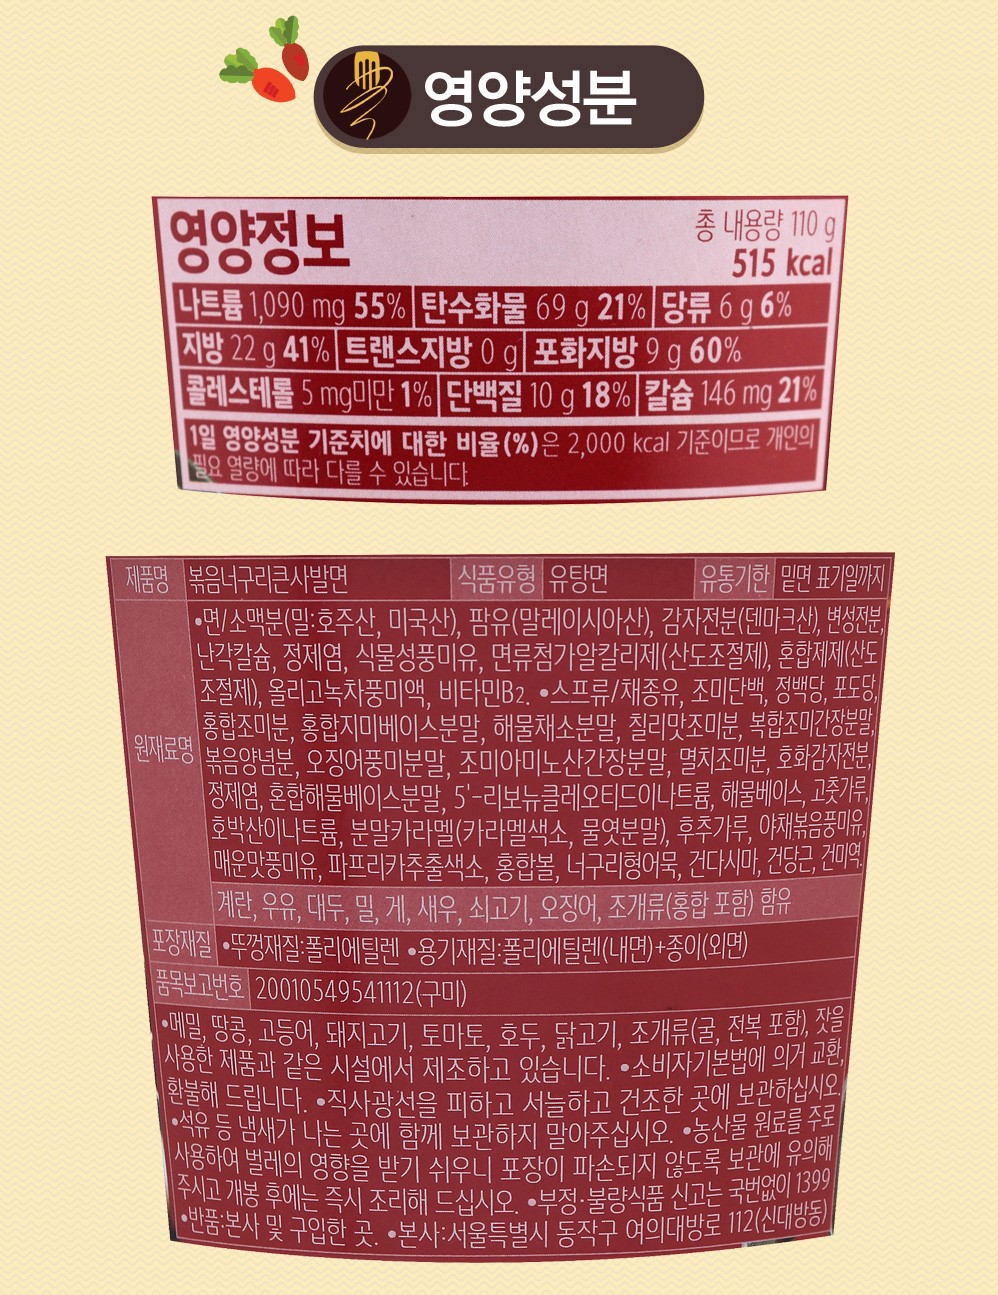 韓國食品-[Nongshim] Neogurie Instant Mixed Cup Noodle 110g